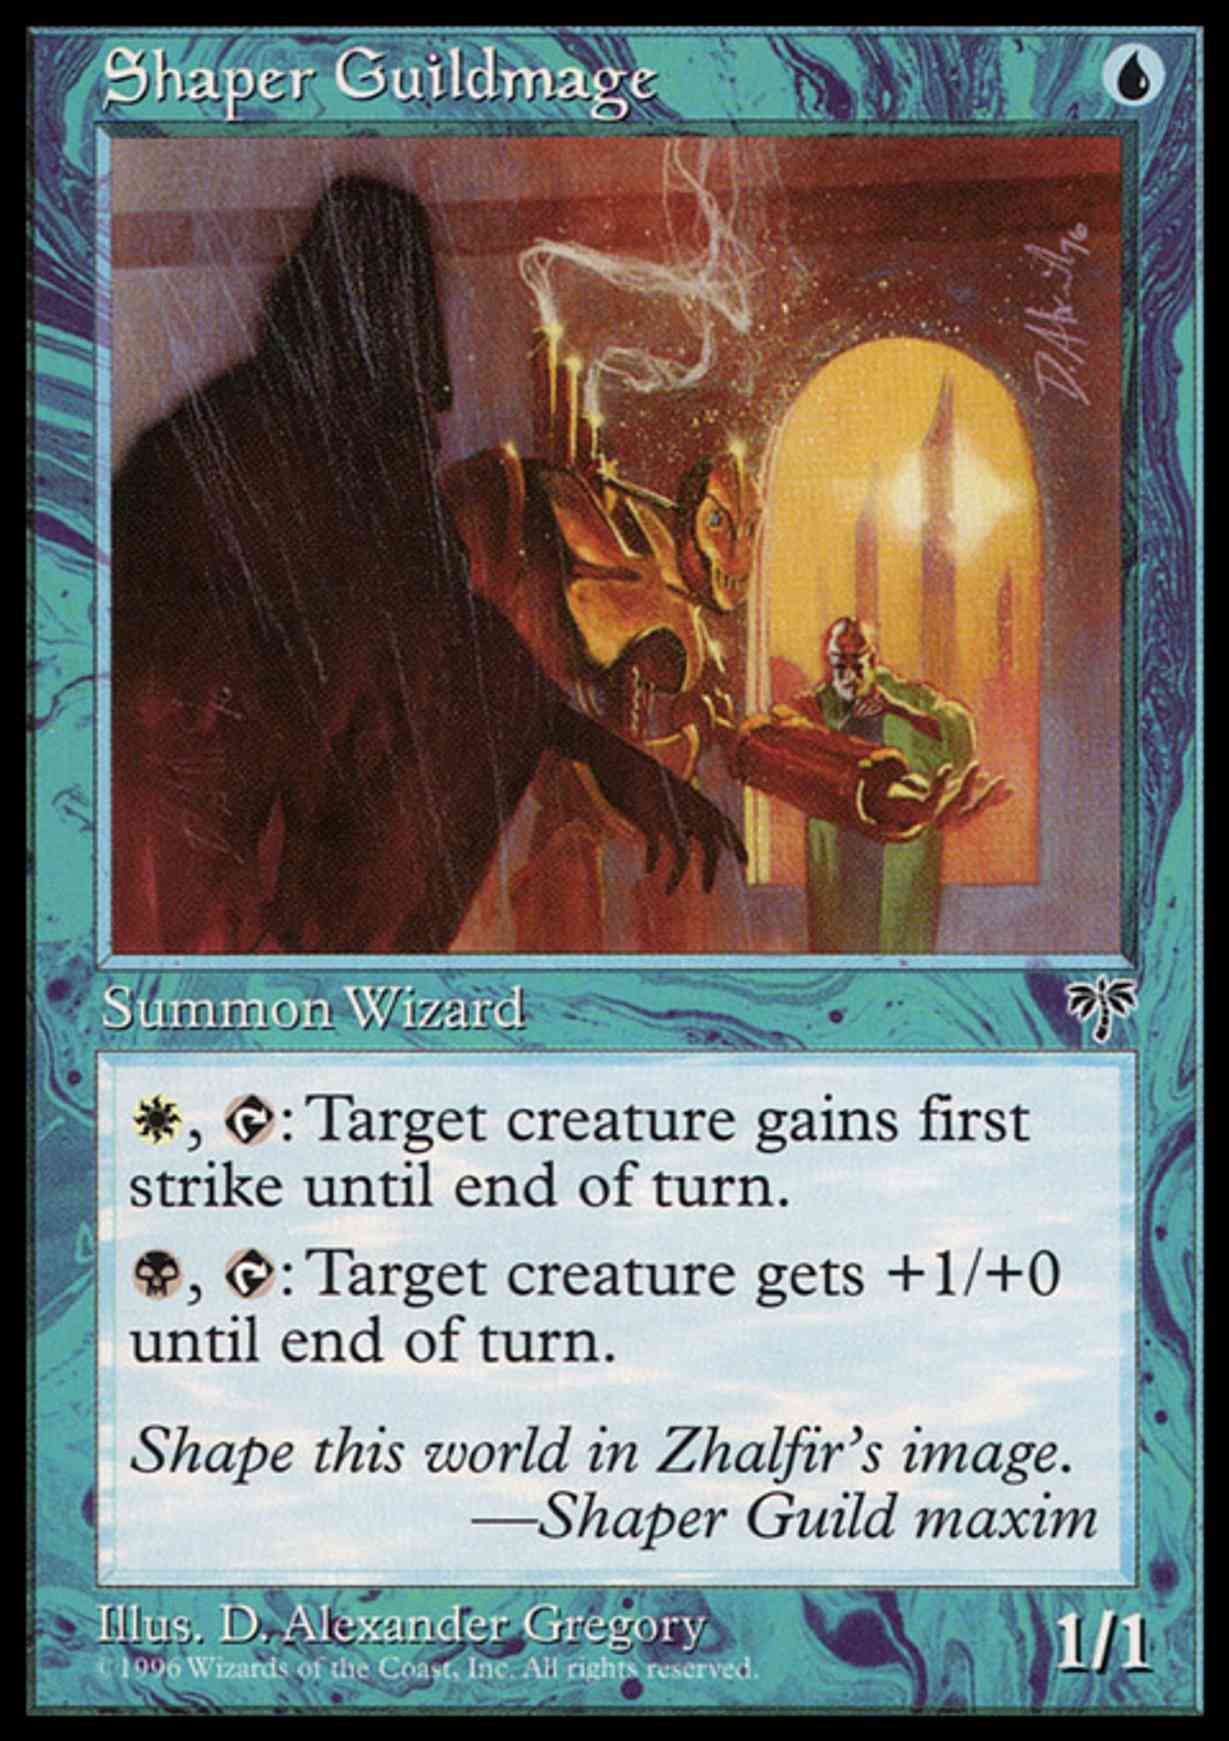 Shaper Guildmage magic card front